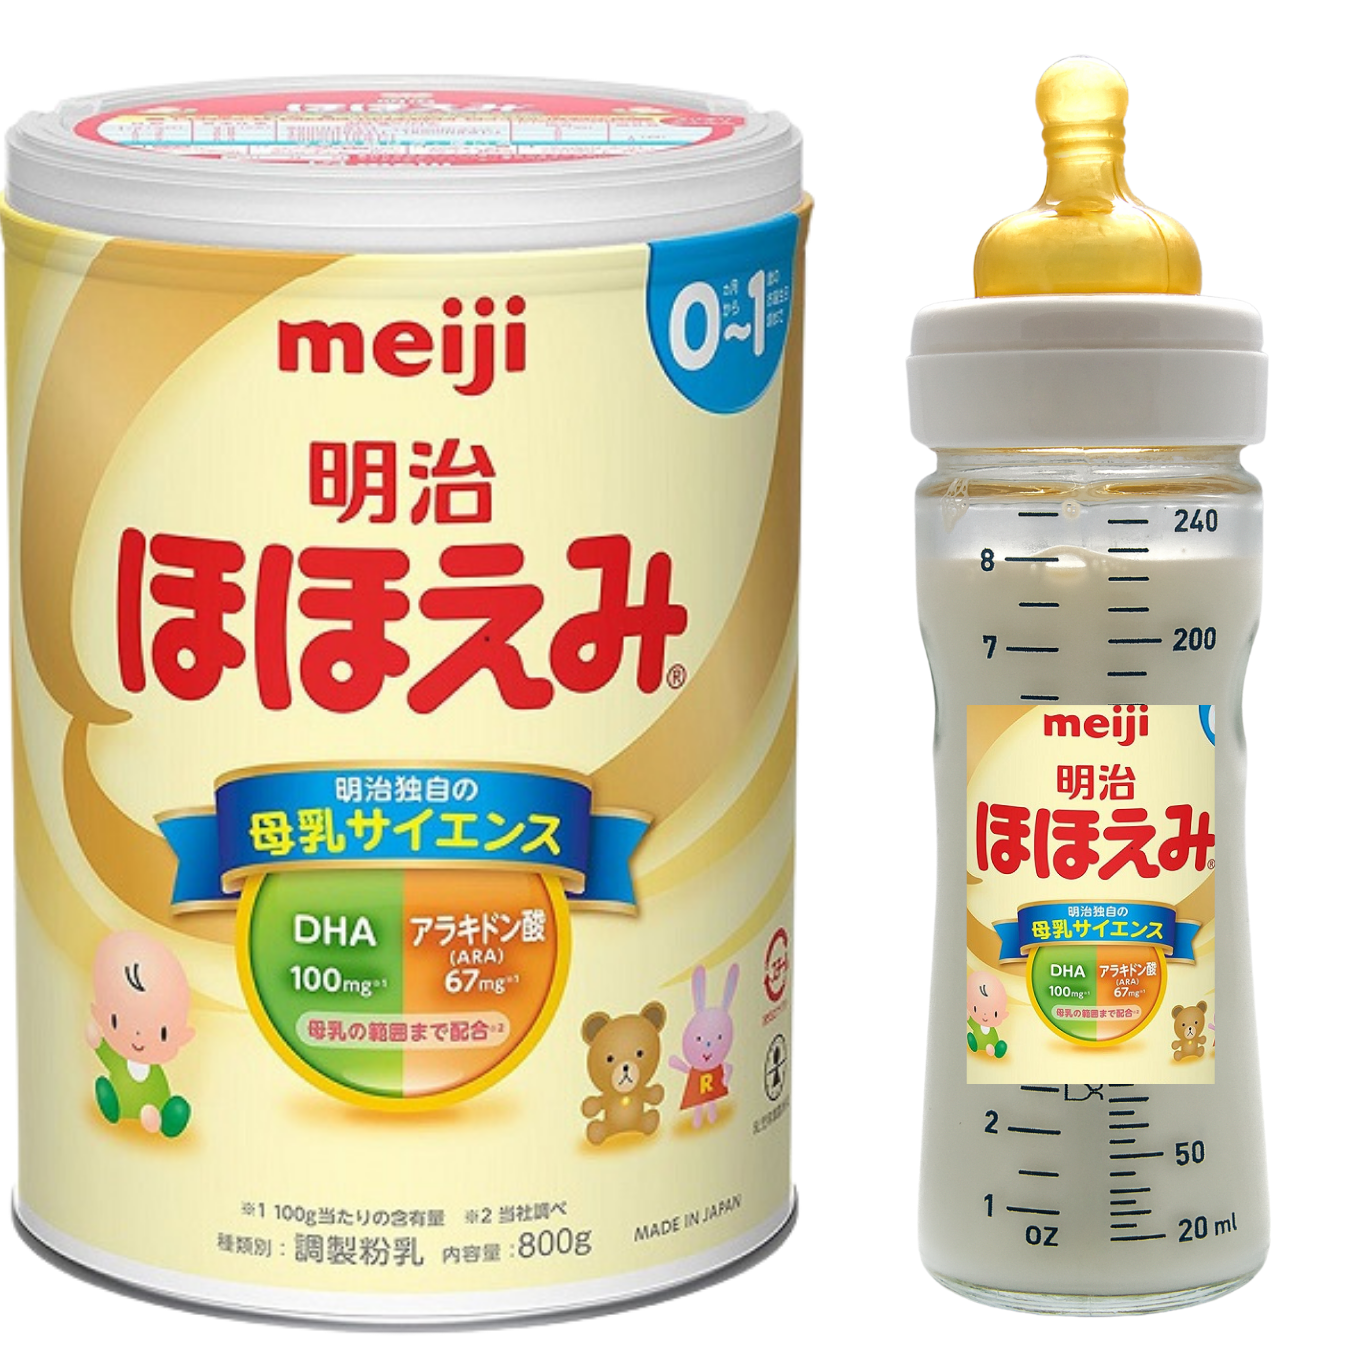 Sữa cho trẻ sơ sinh 0-1 tuổi Meiji Nhật Bản giàu dưỡng chất kèm DHA giúp phát triển cân đối chiều cao, cân nặng, trí não - Massel Official